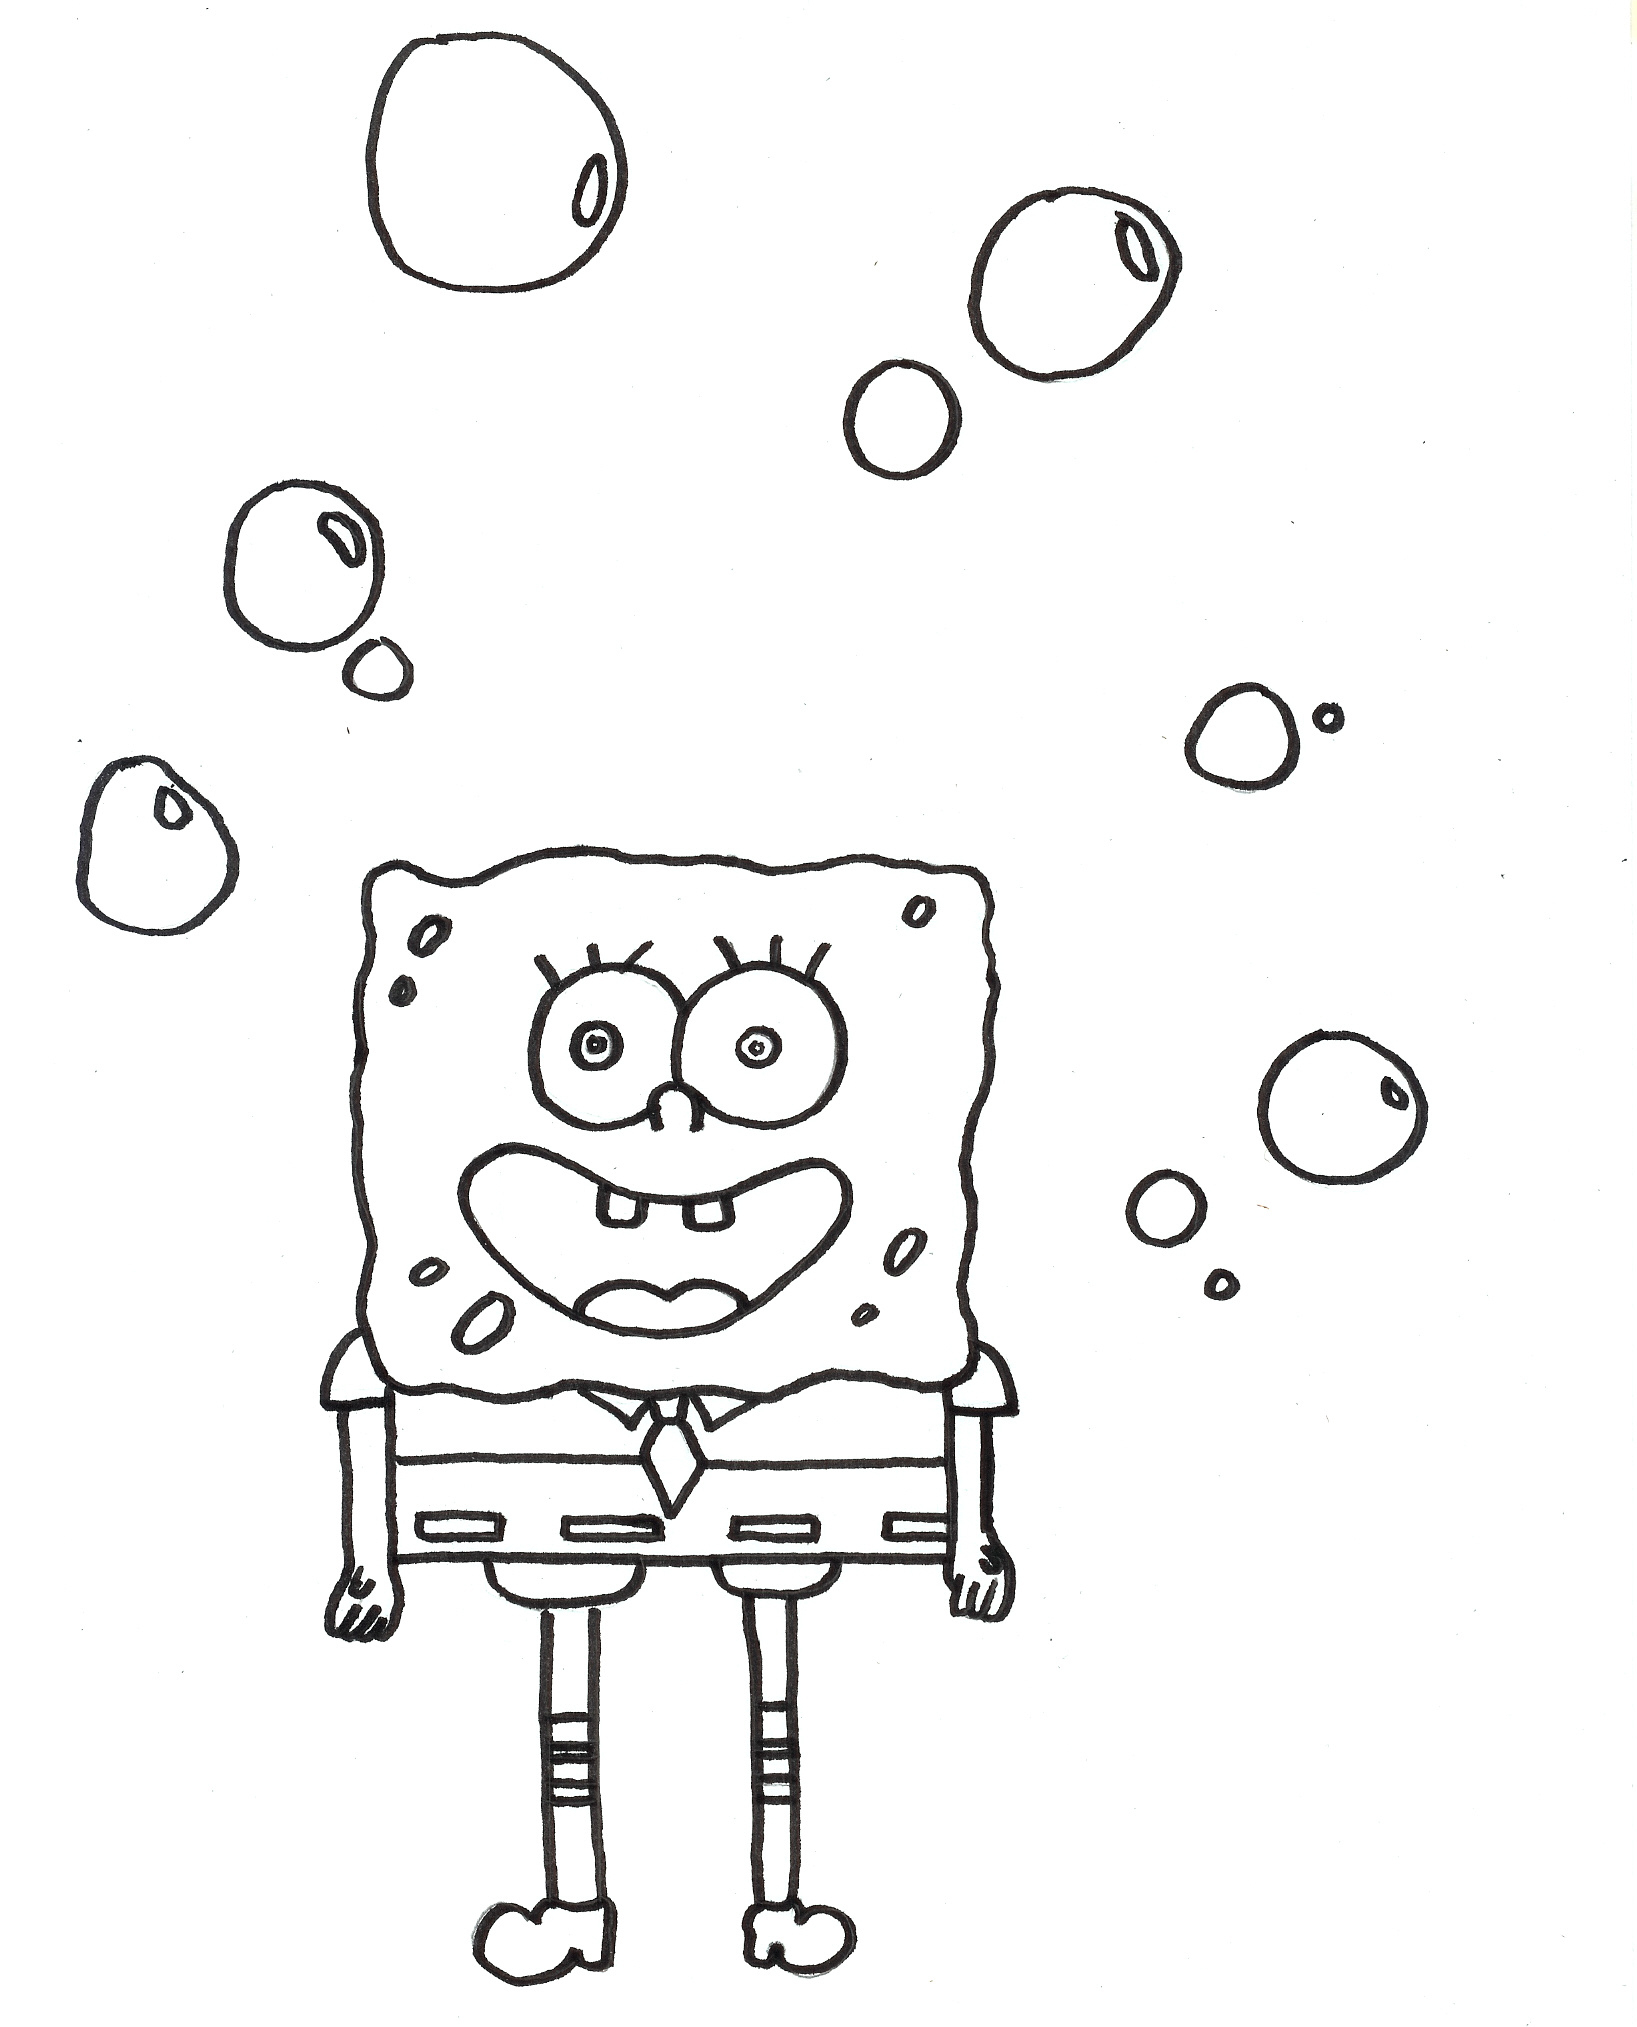 Malvorlagen - Ausmalbilder Spongebob | Ausmalbilder mit Spongebob Malvorlagen Kostenlos